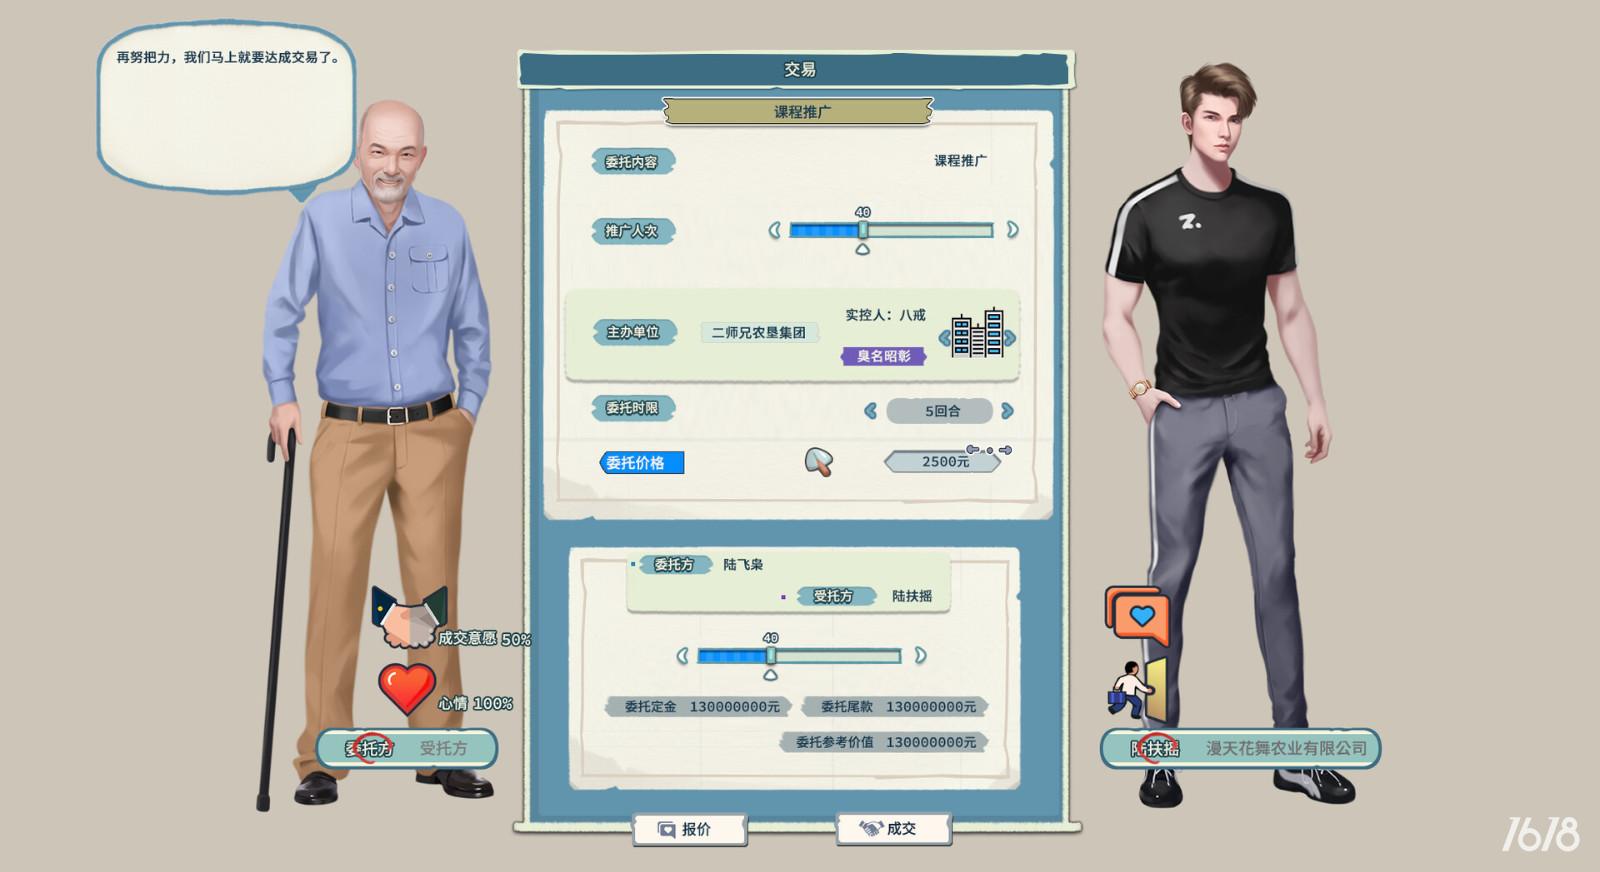 经营游戏《山河行者》Steam页面上线 支持简体中文